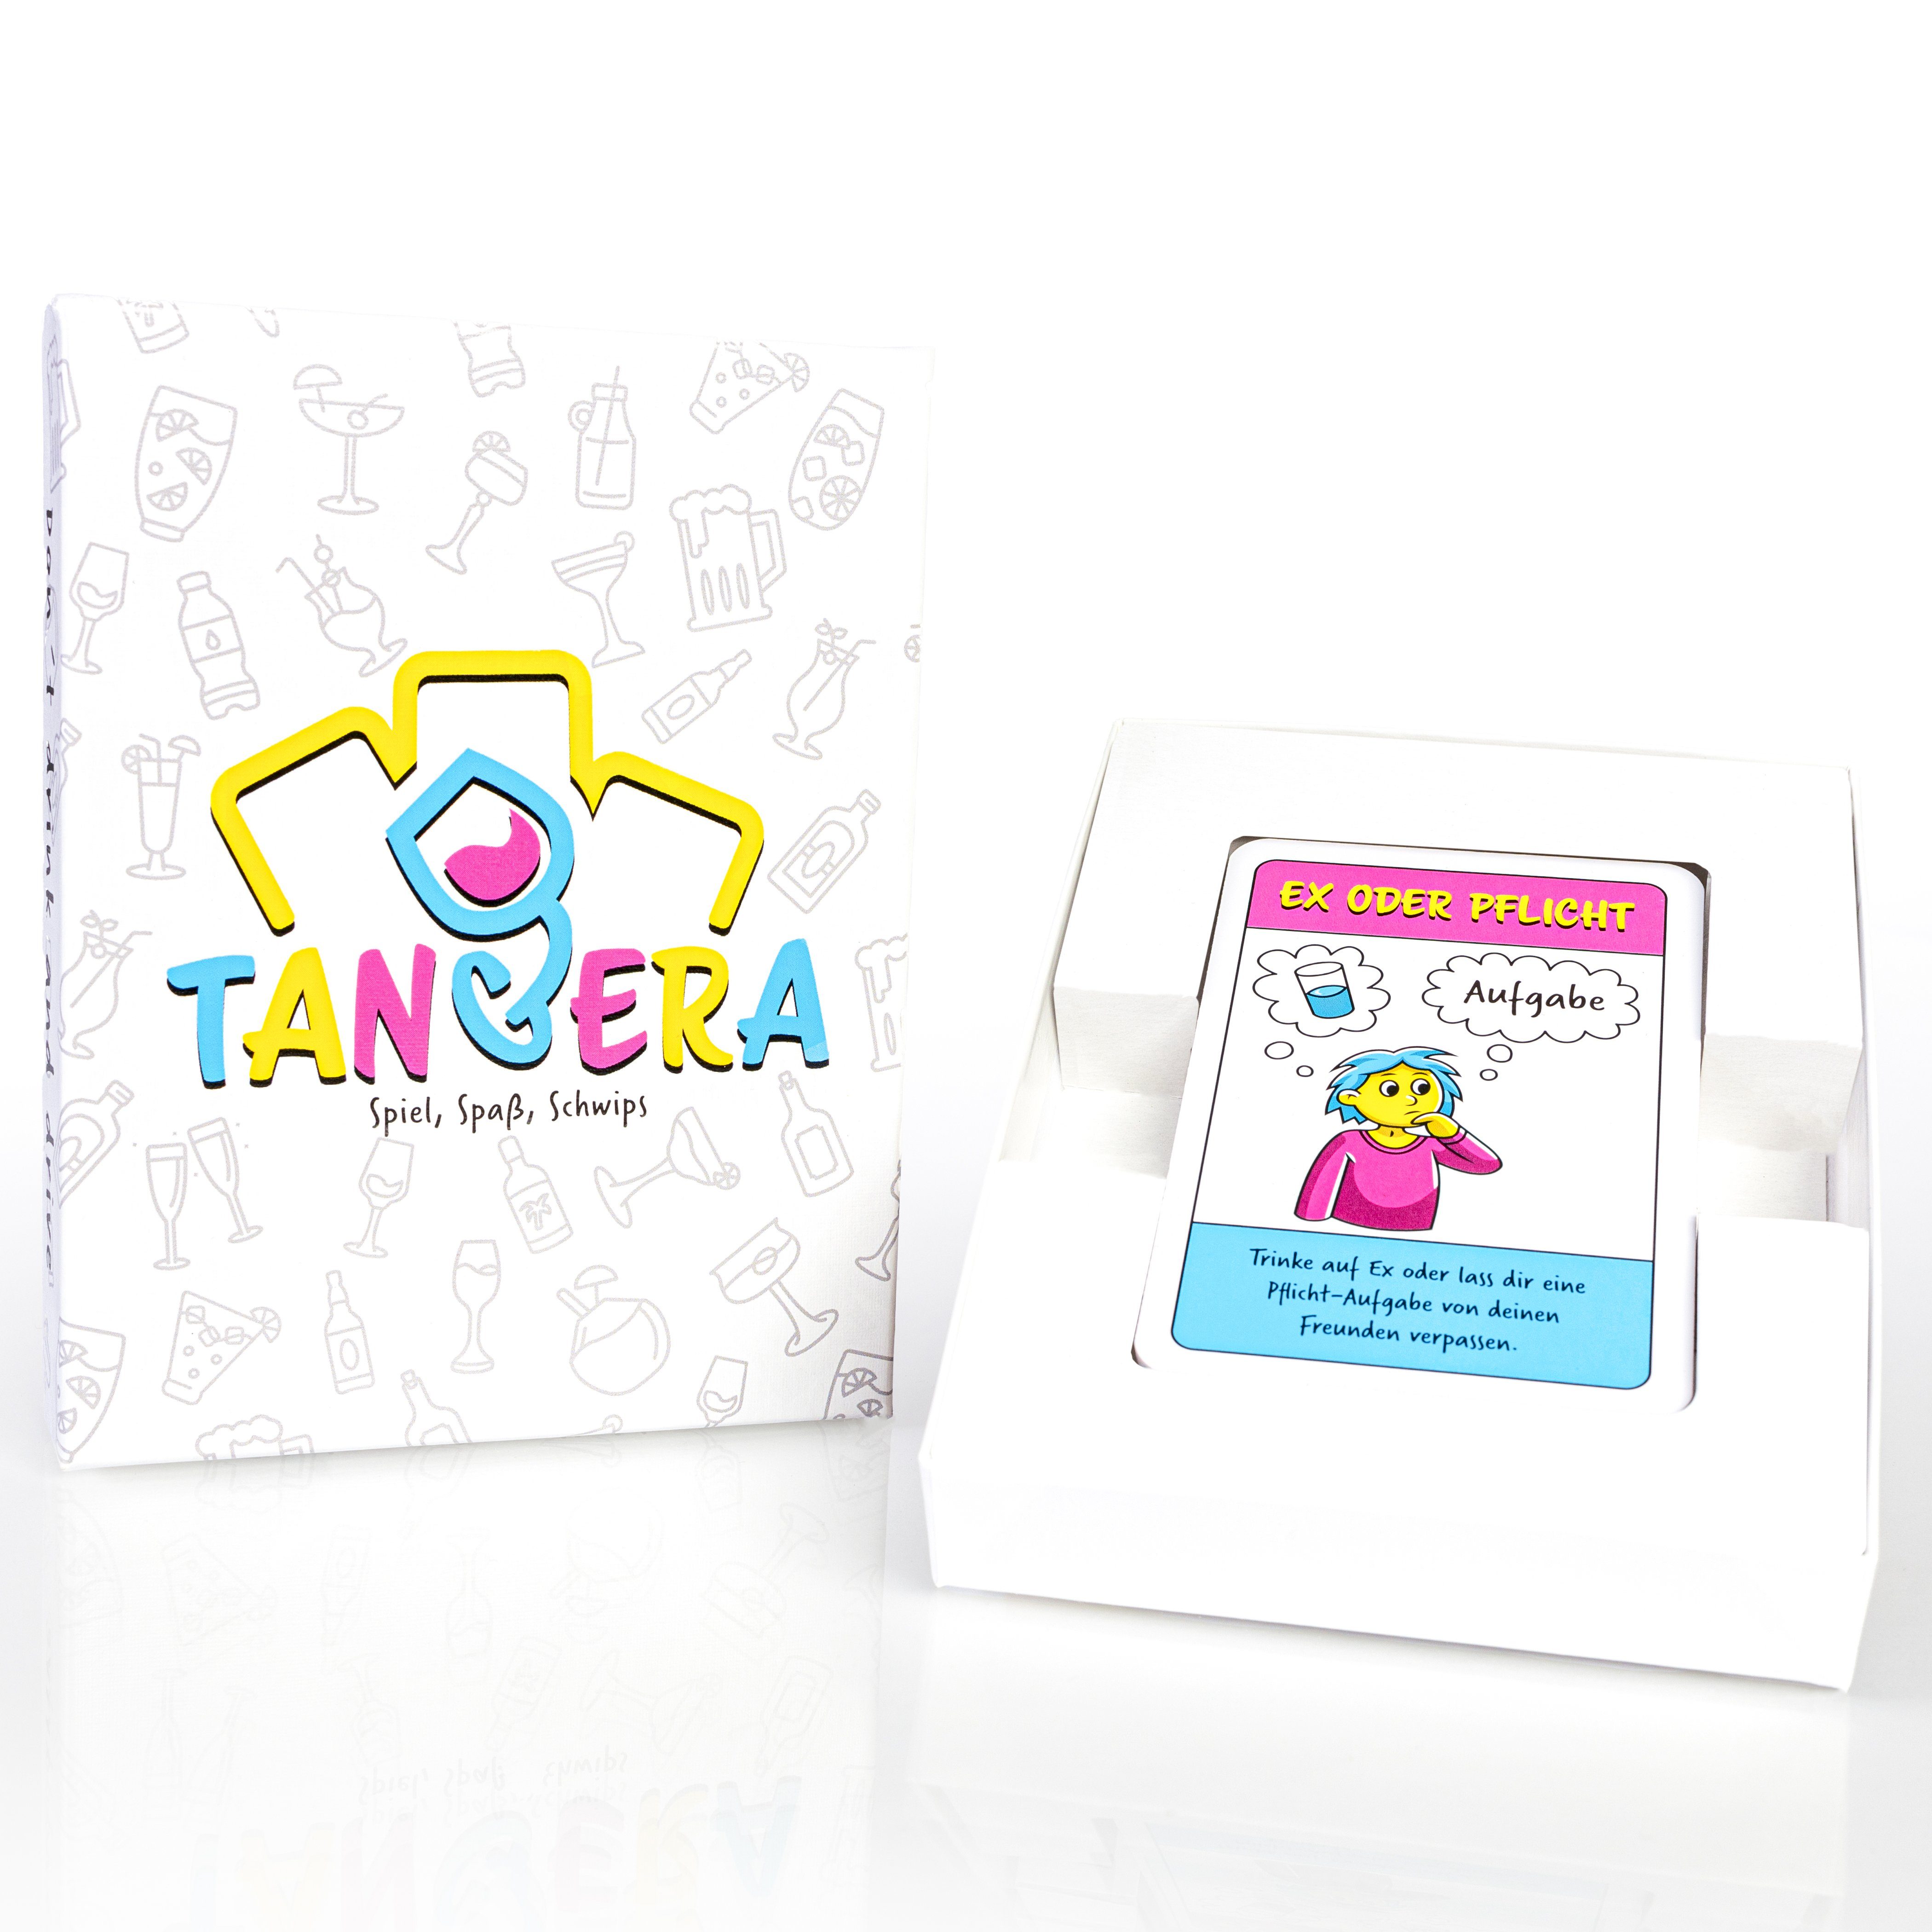 Tangera Spiel, Saufspiel, Trinkspiel, Spielkarten / original hochglanz TANGERA 55 Kartentrinkspiel, Partyspiel Trinkspiel Das